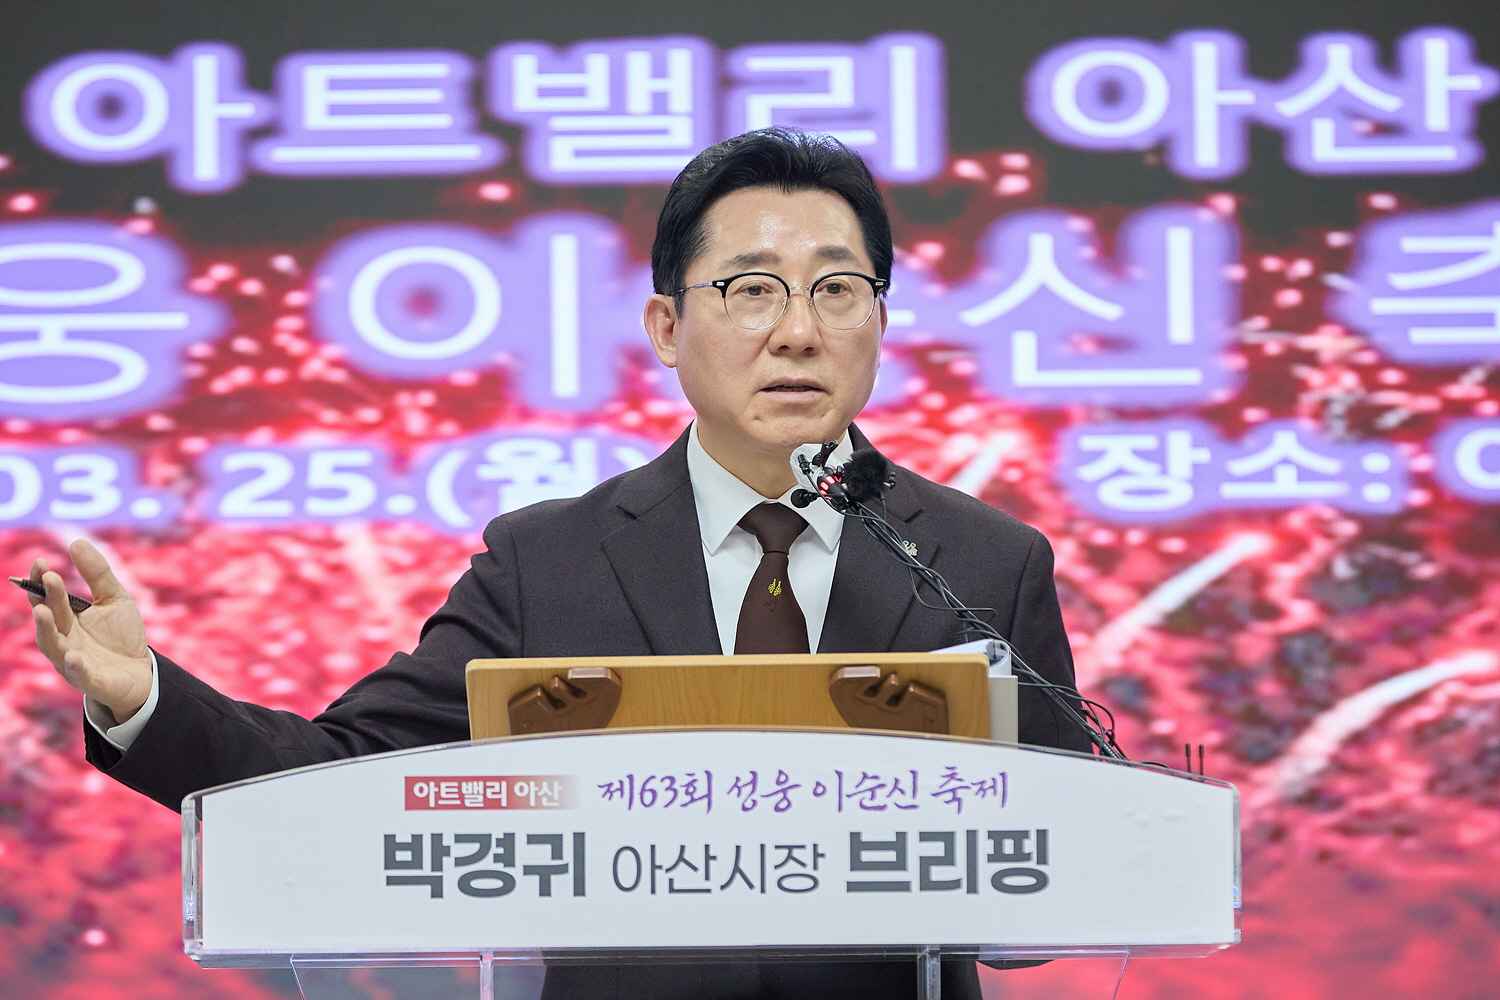 박경귀 아산시장, 제63회 성웅 이순신 축제 신규 프로그램 공개  관련사진